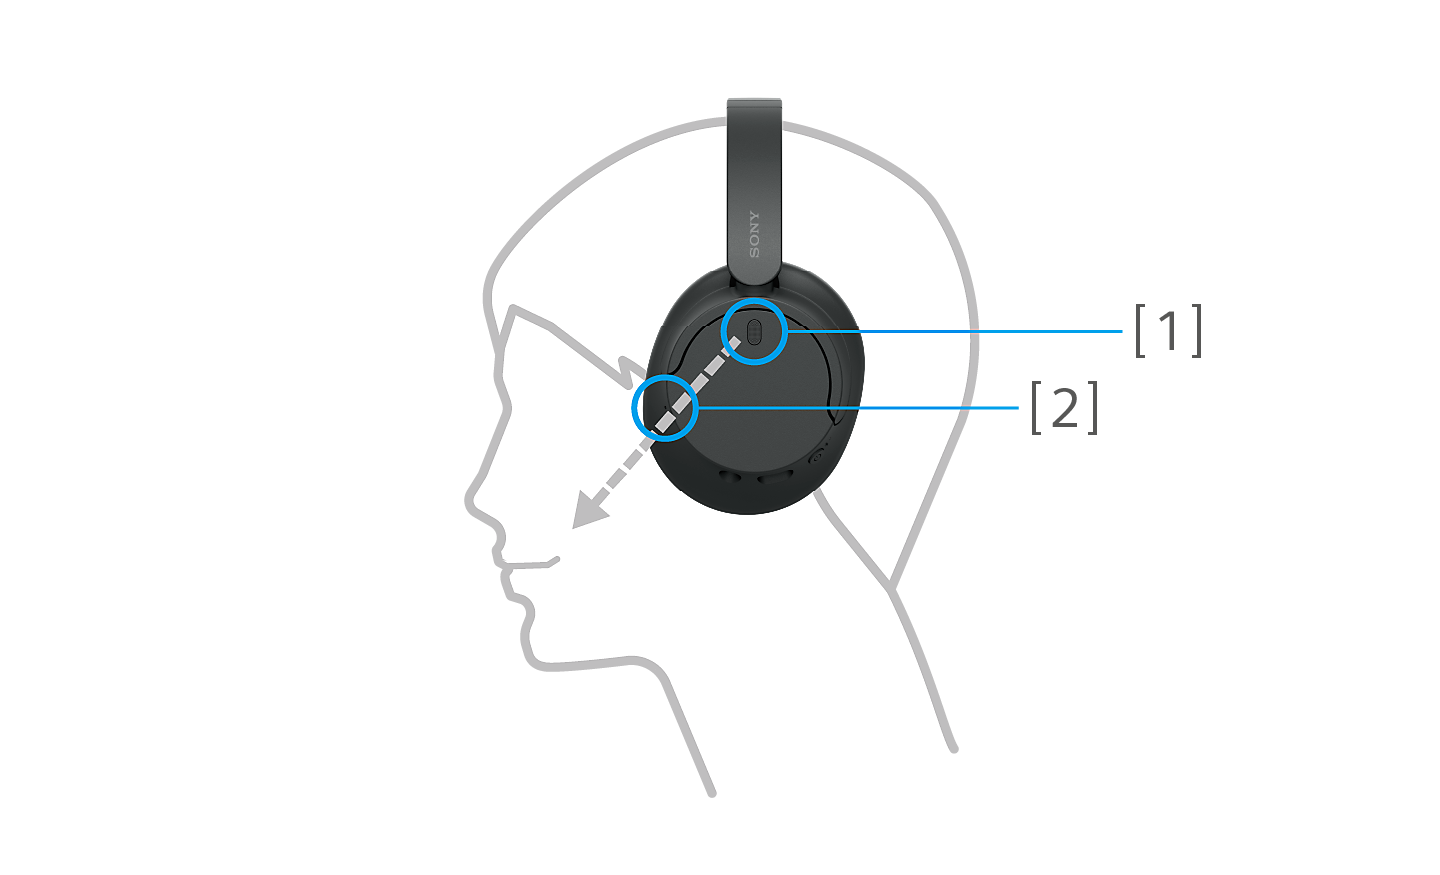 صورة رأس مخطط يرتدي زوجًا أسود من سماعات الرأس WH-CH720 من سوني مع رقمي 1 و2 يشيران إلى غطاء الأذن